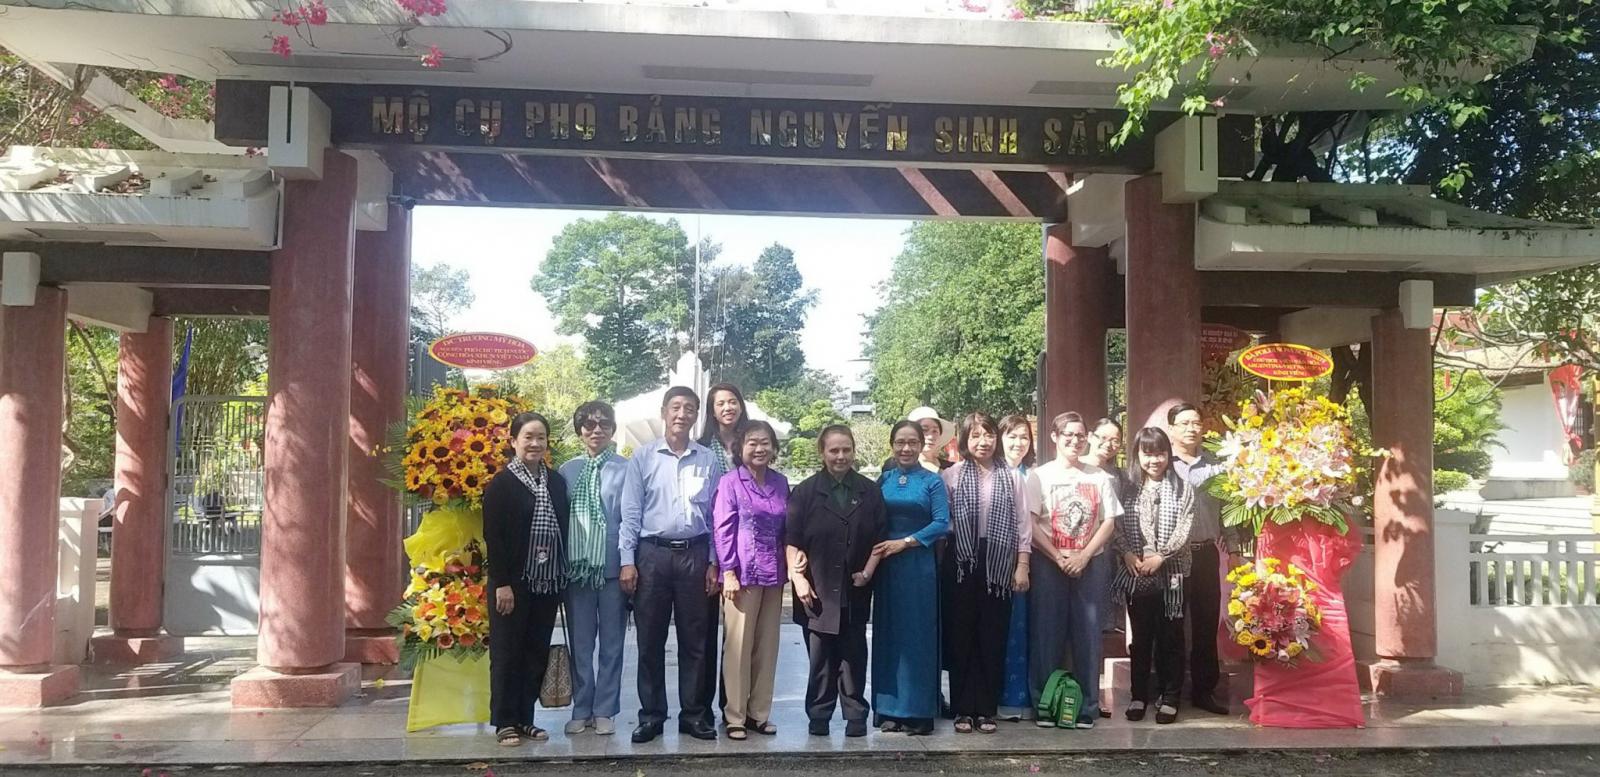 Đoàn Viện Văn hoá Argentina - Việt Nam đến viếng dâng hương mộ cụ Phó bảng Nguyễn Sinh Sắc